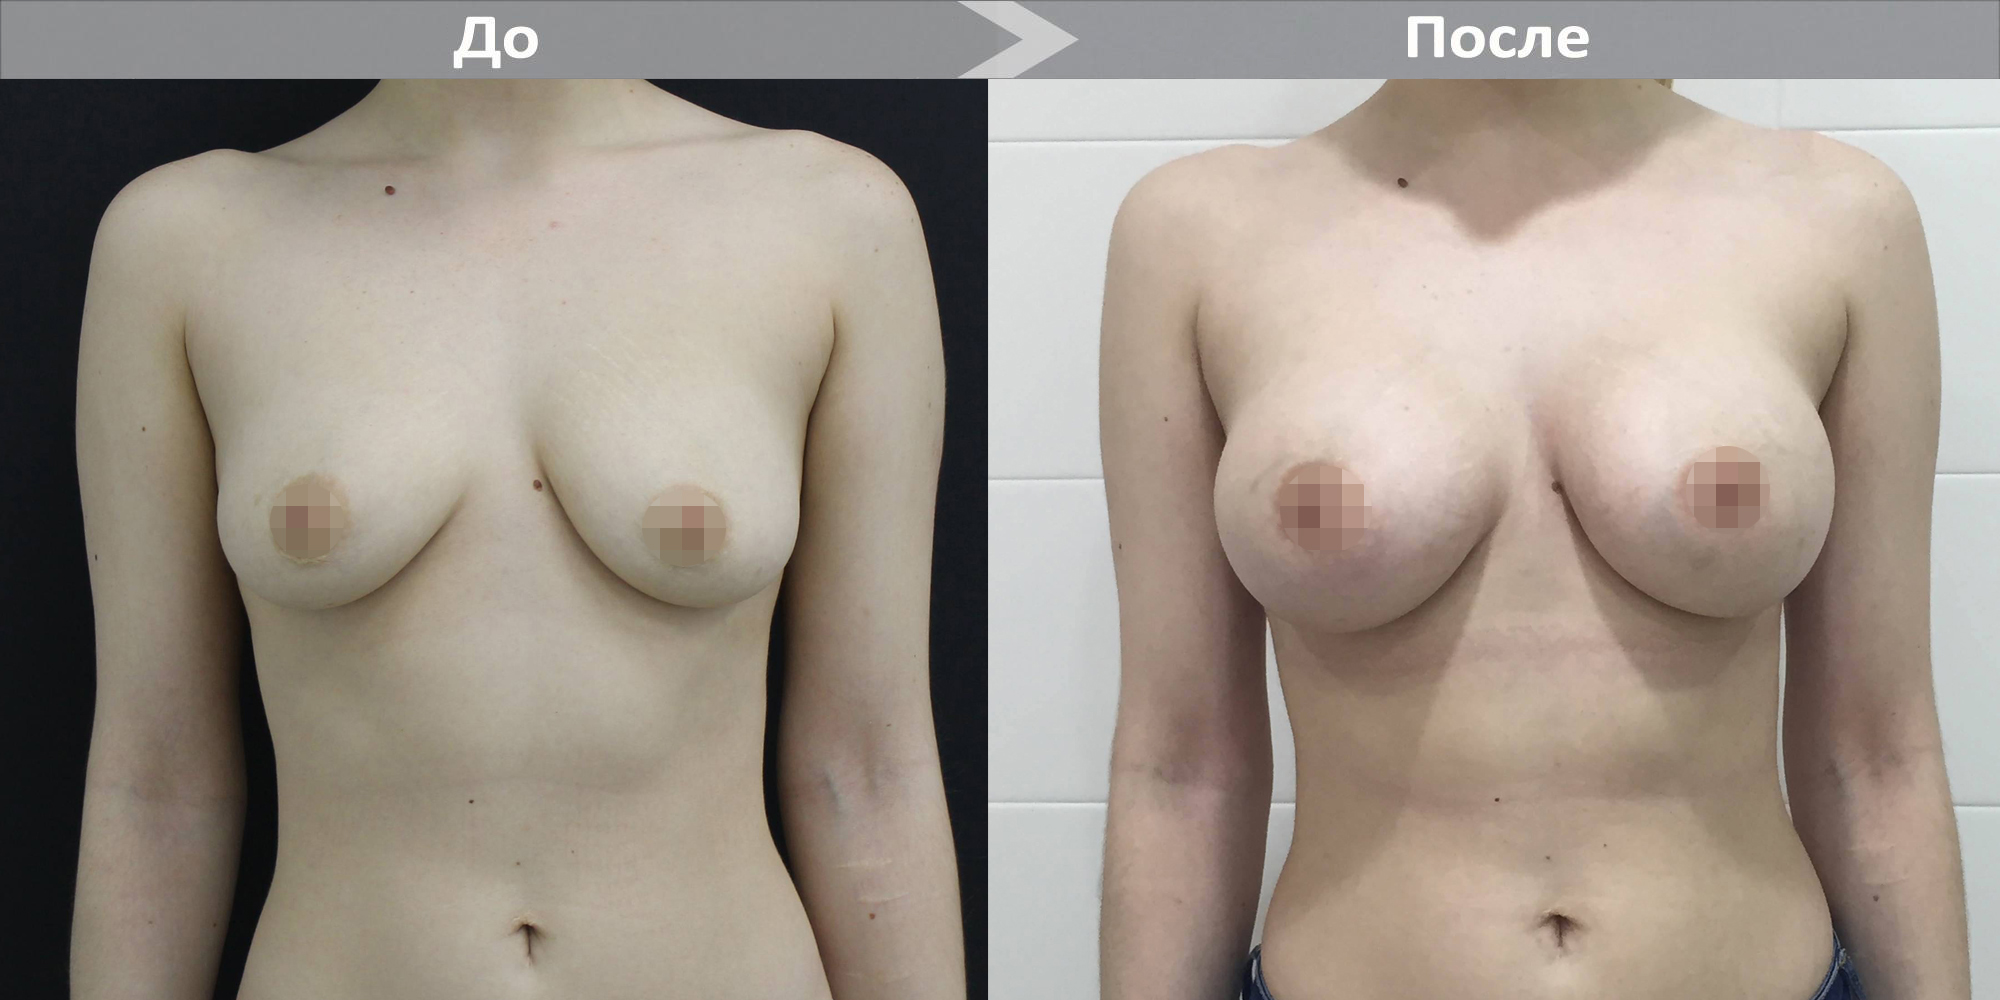 как делают пластическую операцию груди женщин фото 83